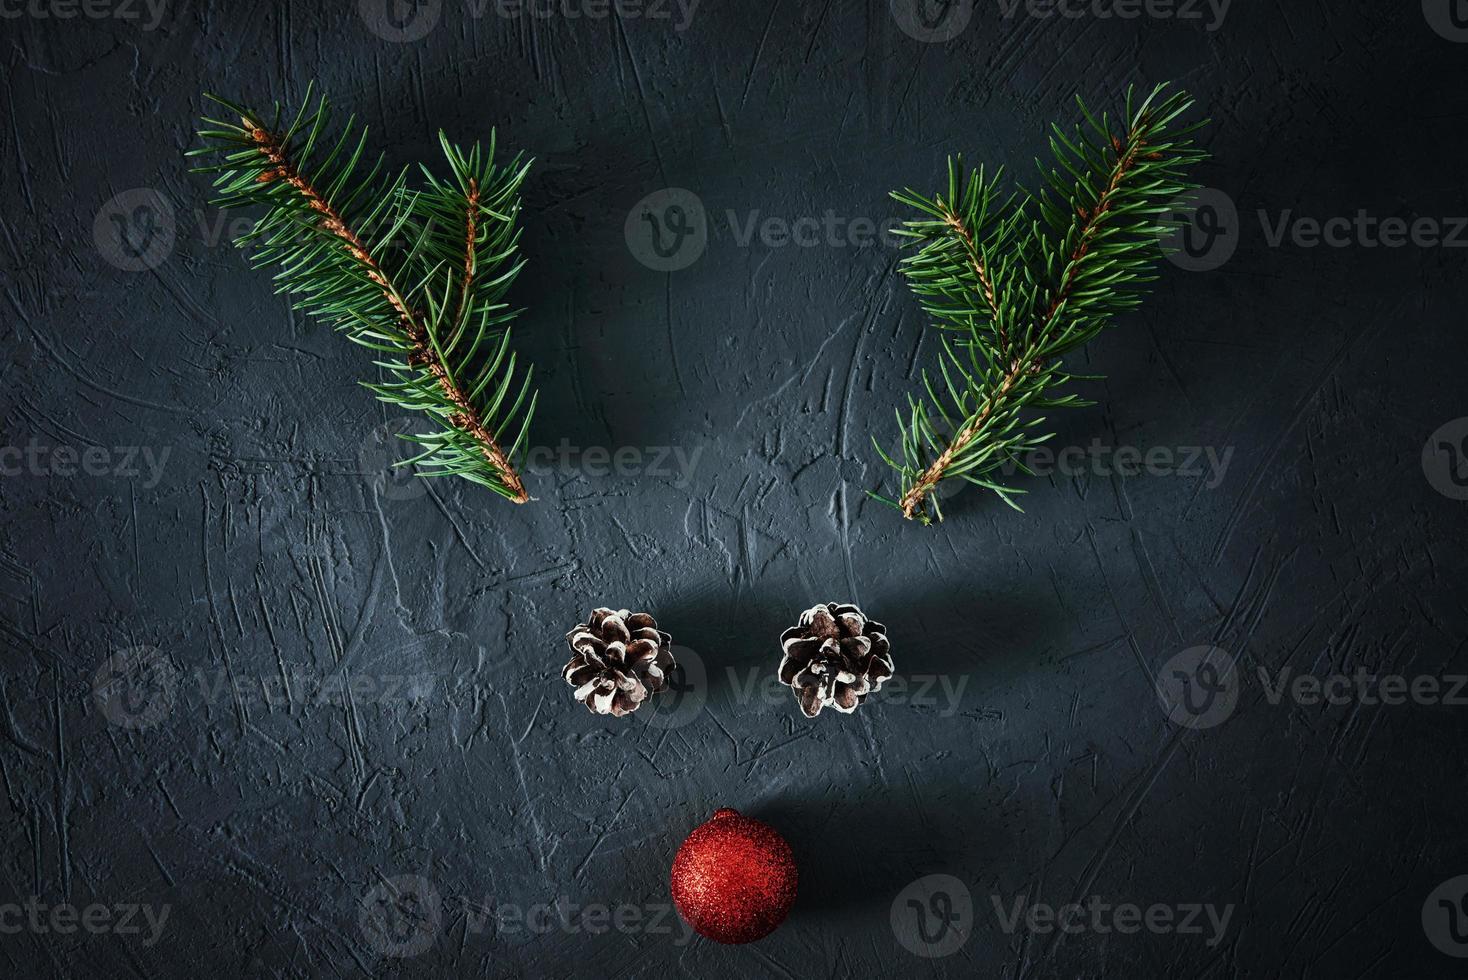 jul rådjur tillverkad av gran träd grenar och festlig struntsak foto